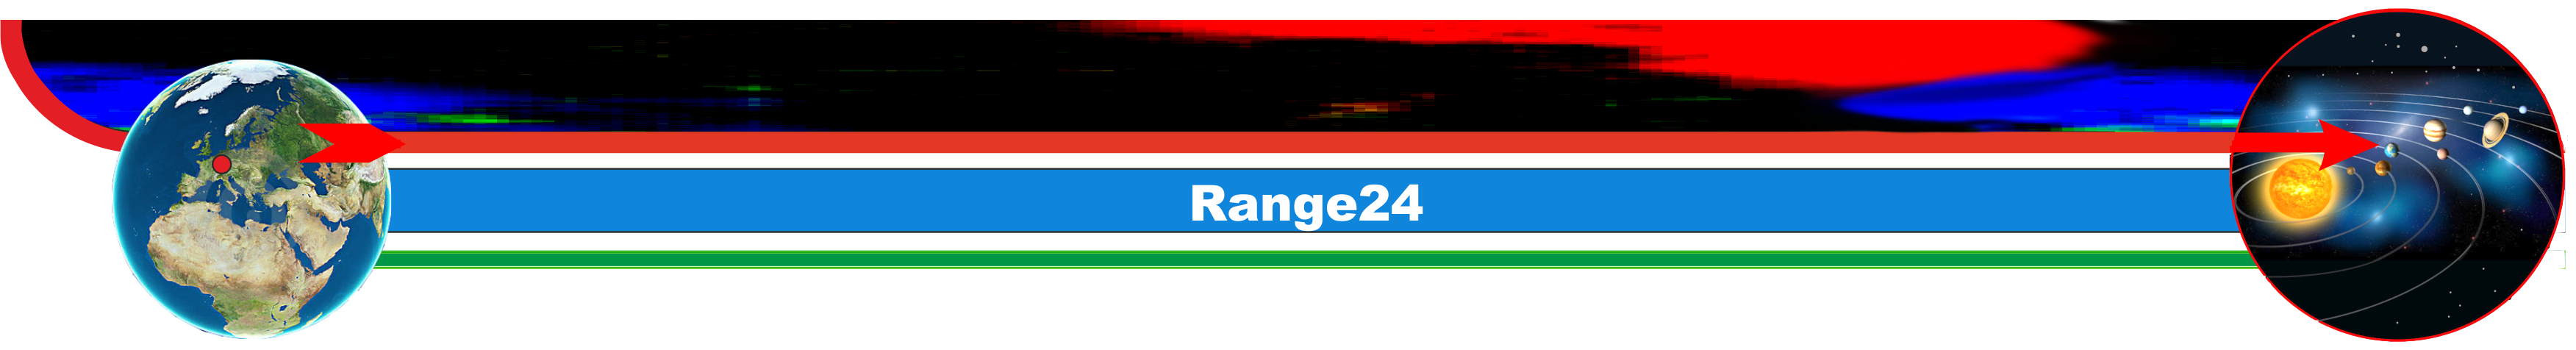 Range 24